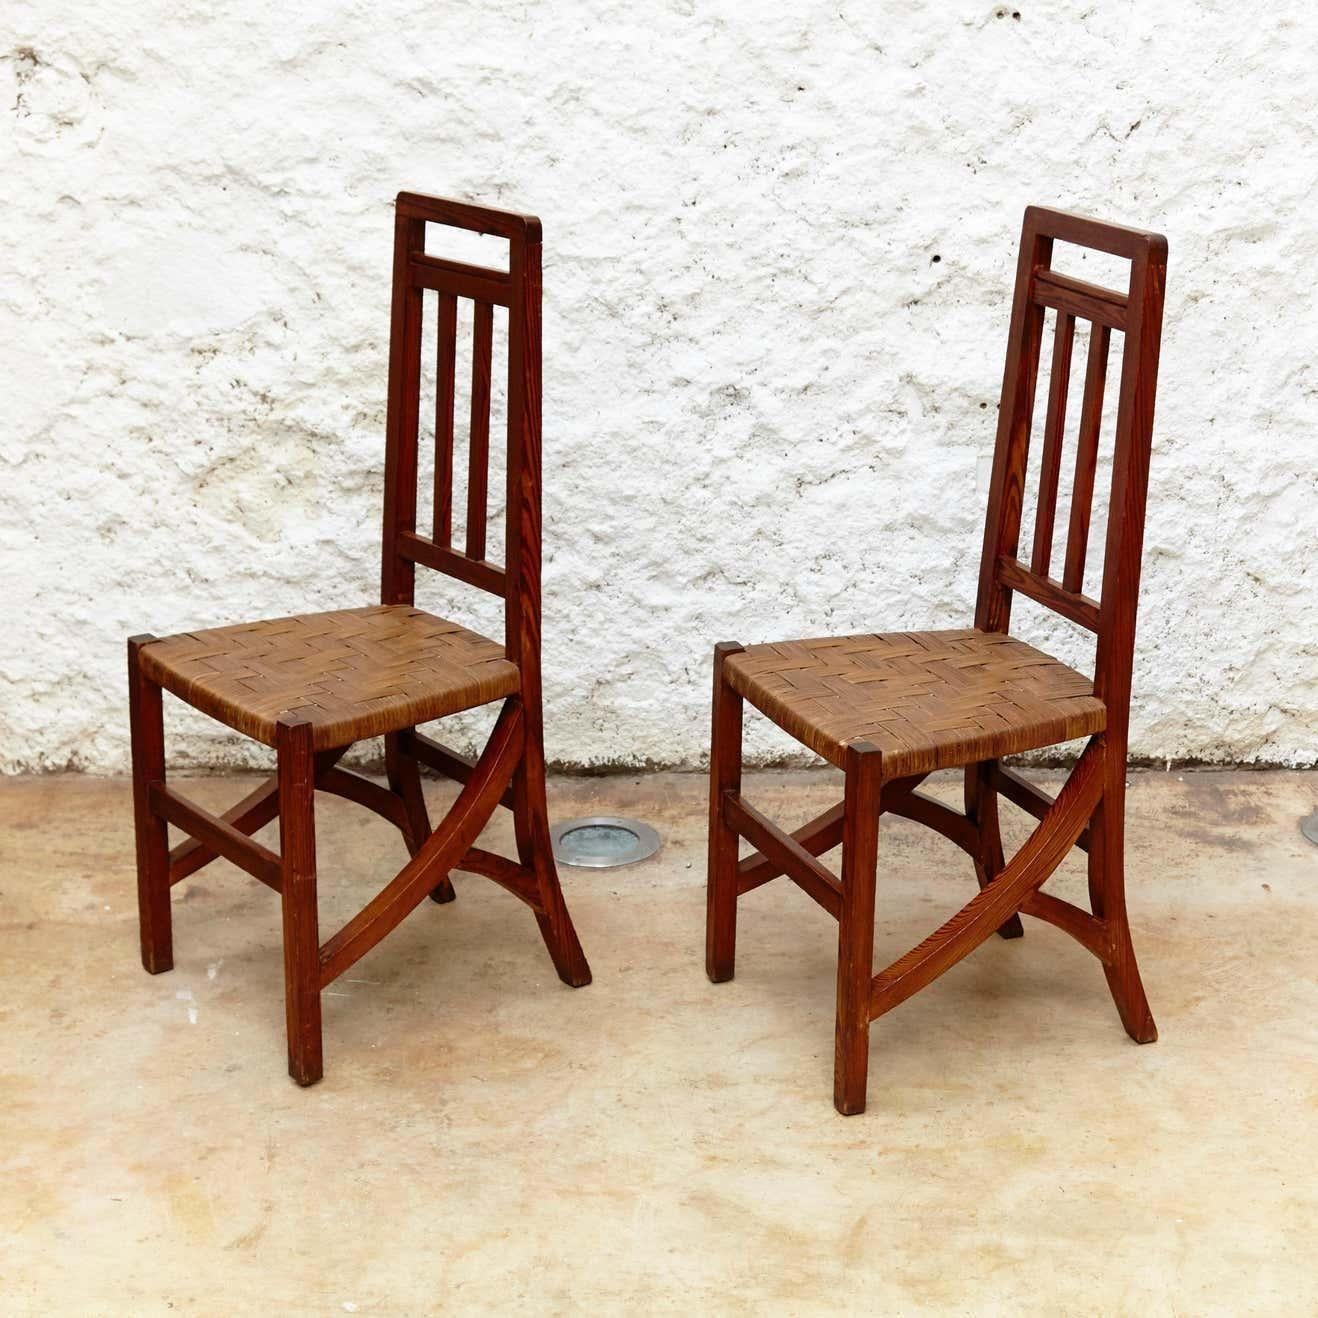 Satz von zwei Arts & Crafts Stühlen aus Holz und Rattan, um 1910
Von einem unbekannten Designer und Hersteller.
Hergestellt in Spanien, um 1910.
Holz und Rattan.

Im Originalzustand mit geringen Gebrauchsspuren, die dem Alter und dem Gebrauch